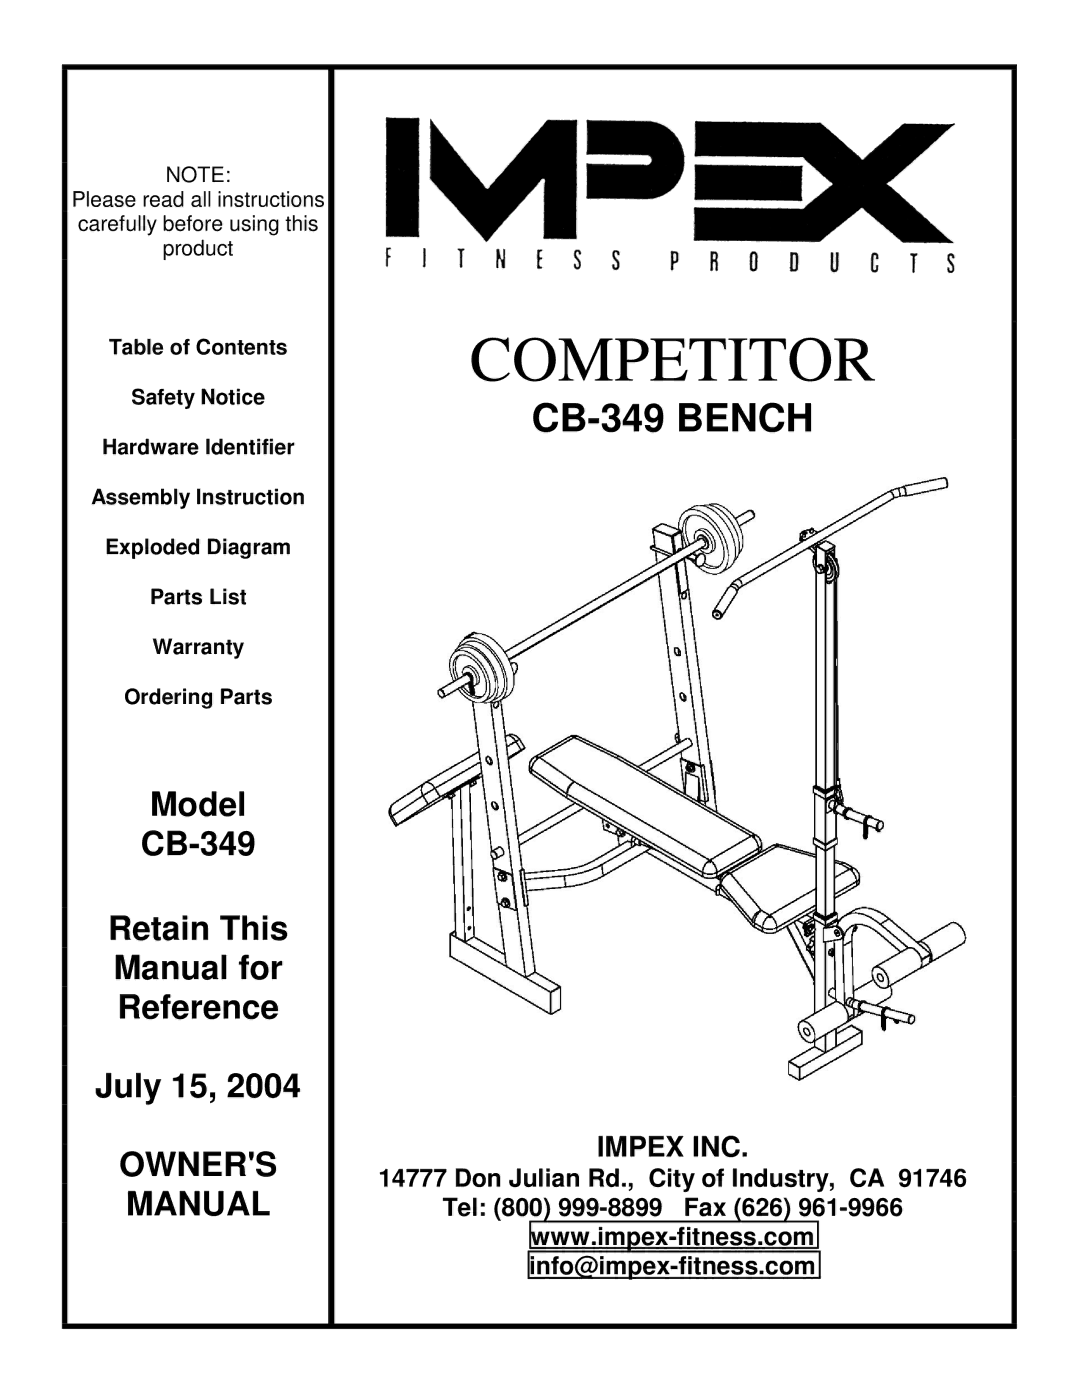 Impex CB-349 manual Competitor 